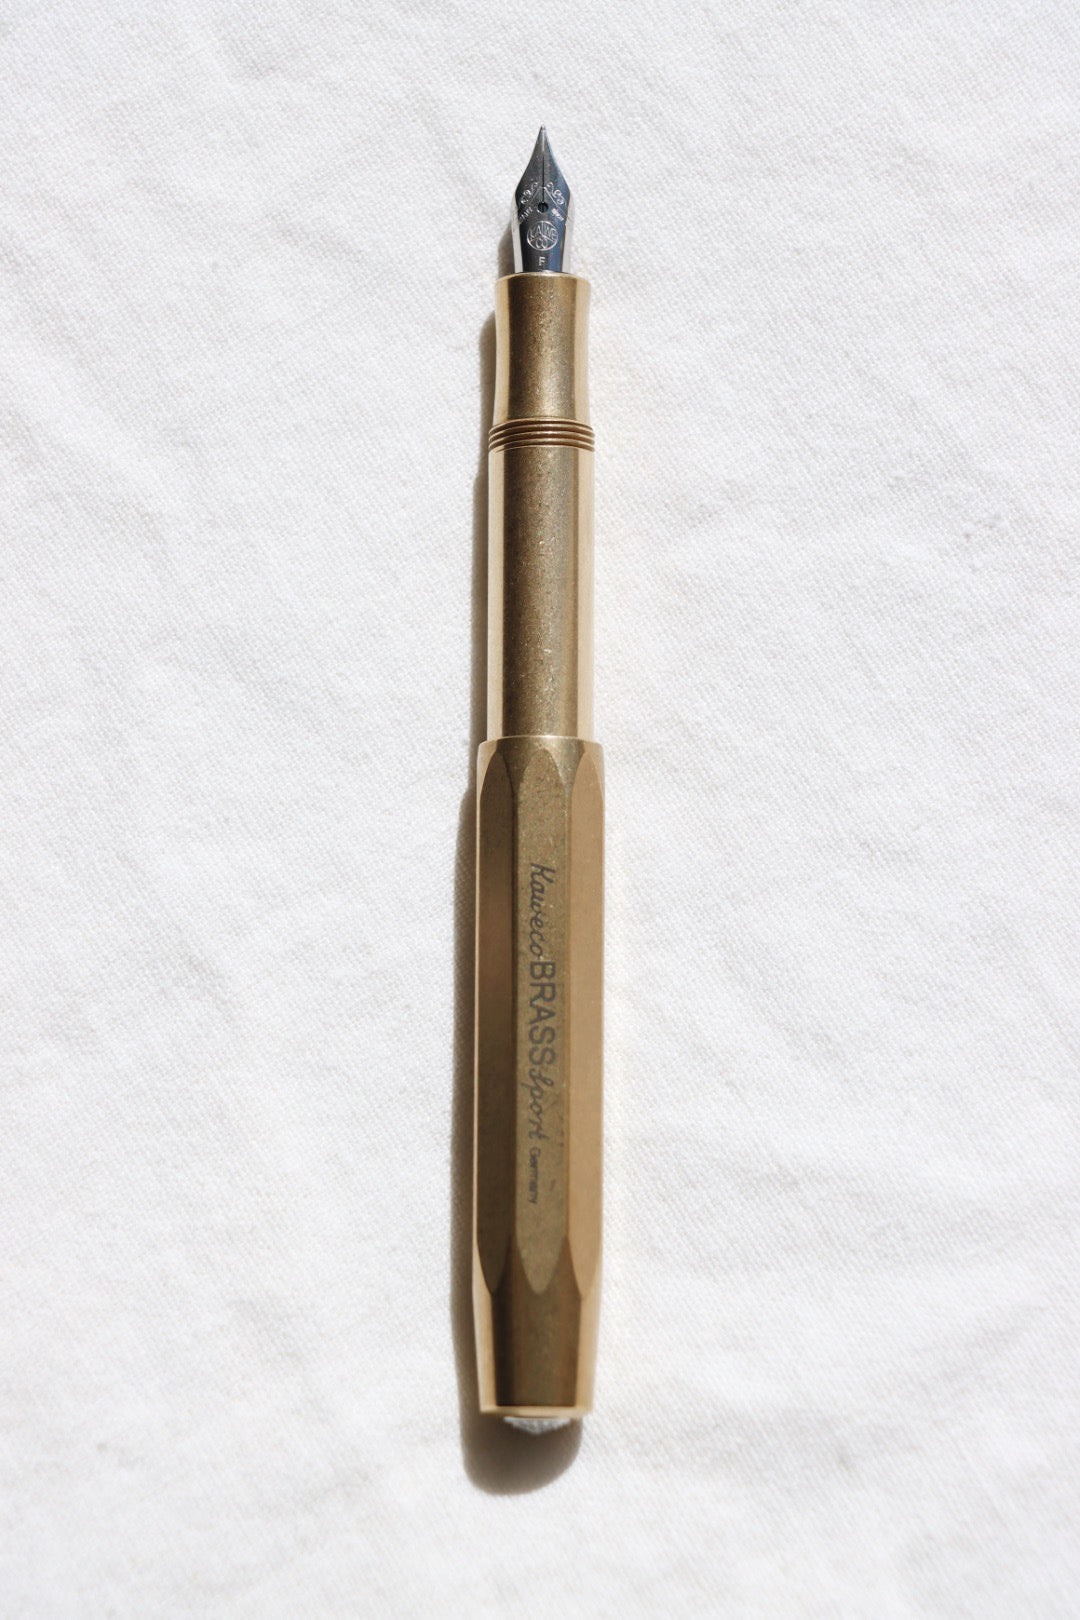 Kaweco Sport Gel Rollerball Pen - Solid Brass : : Office